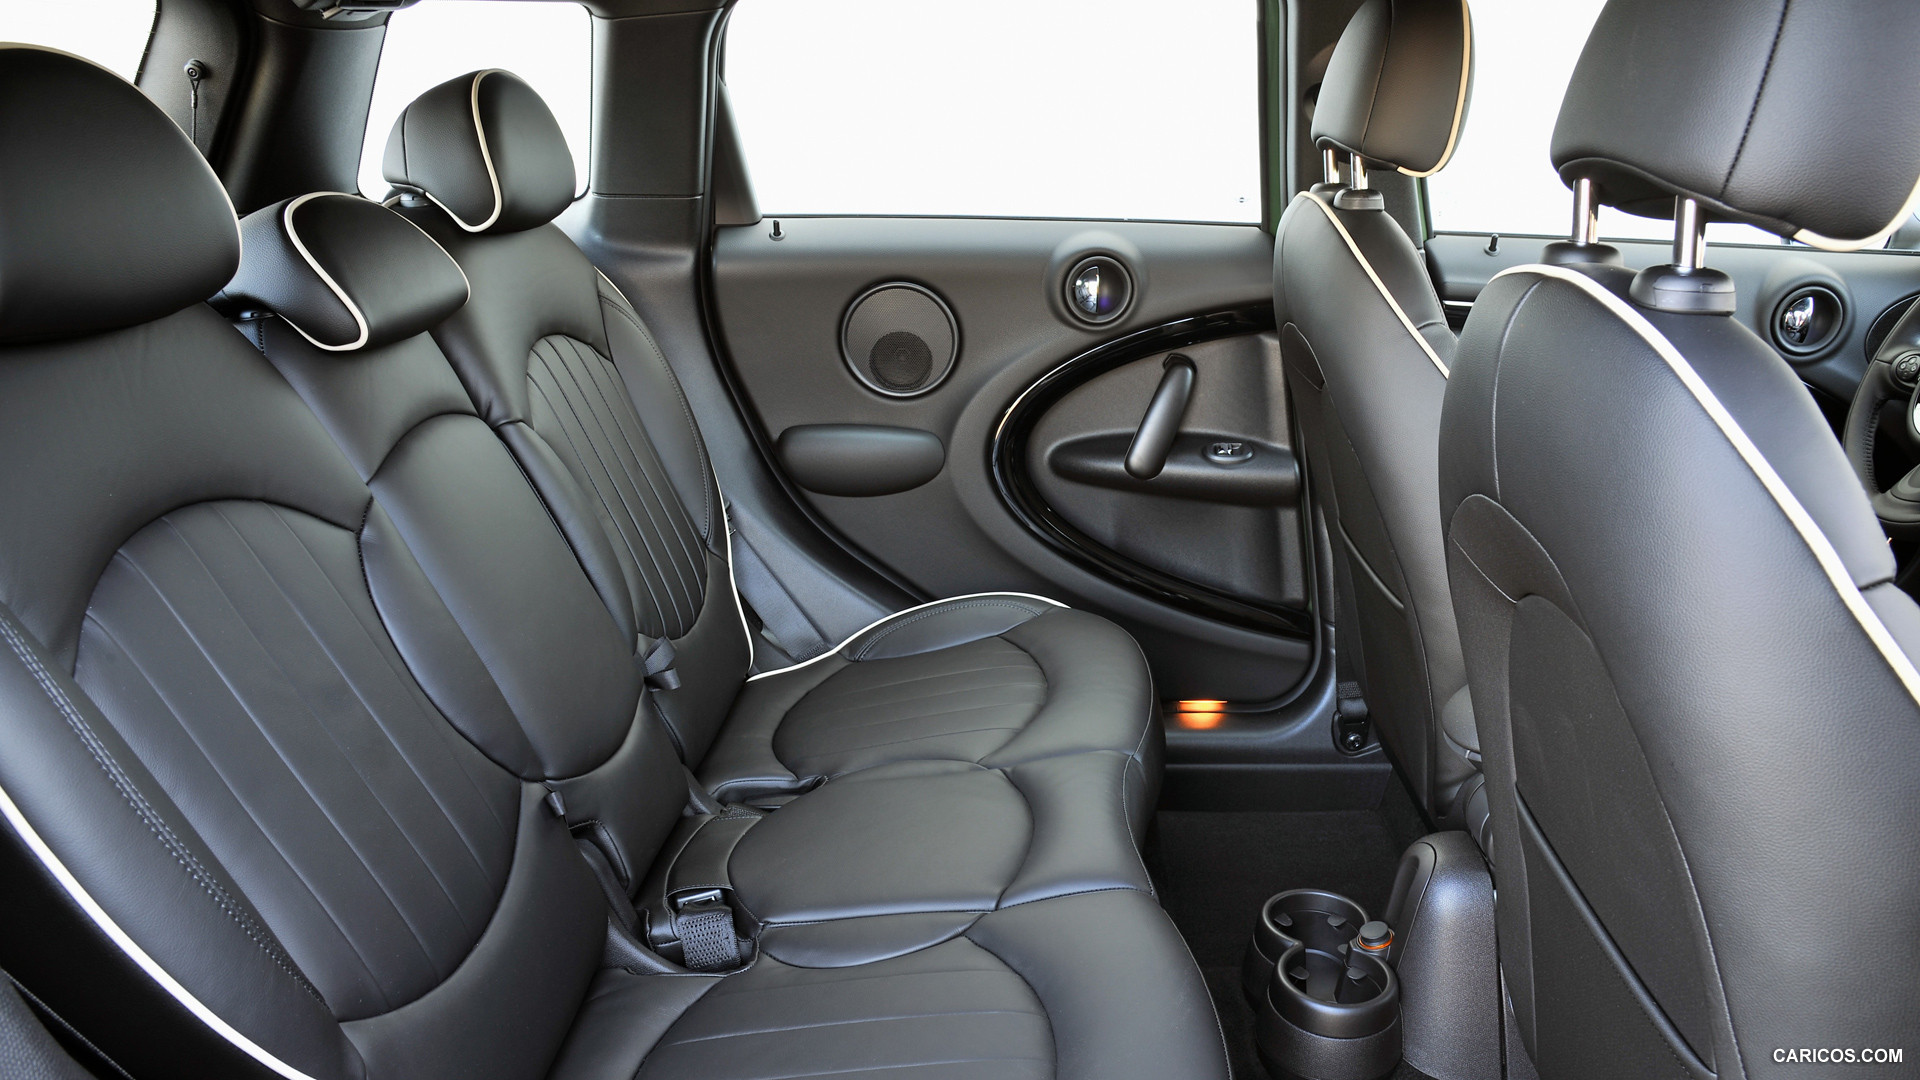 2015 Mini Cooper S Countryman Interior Rear Seats Hd